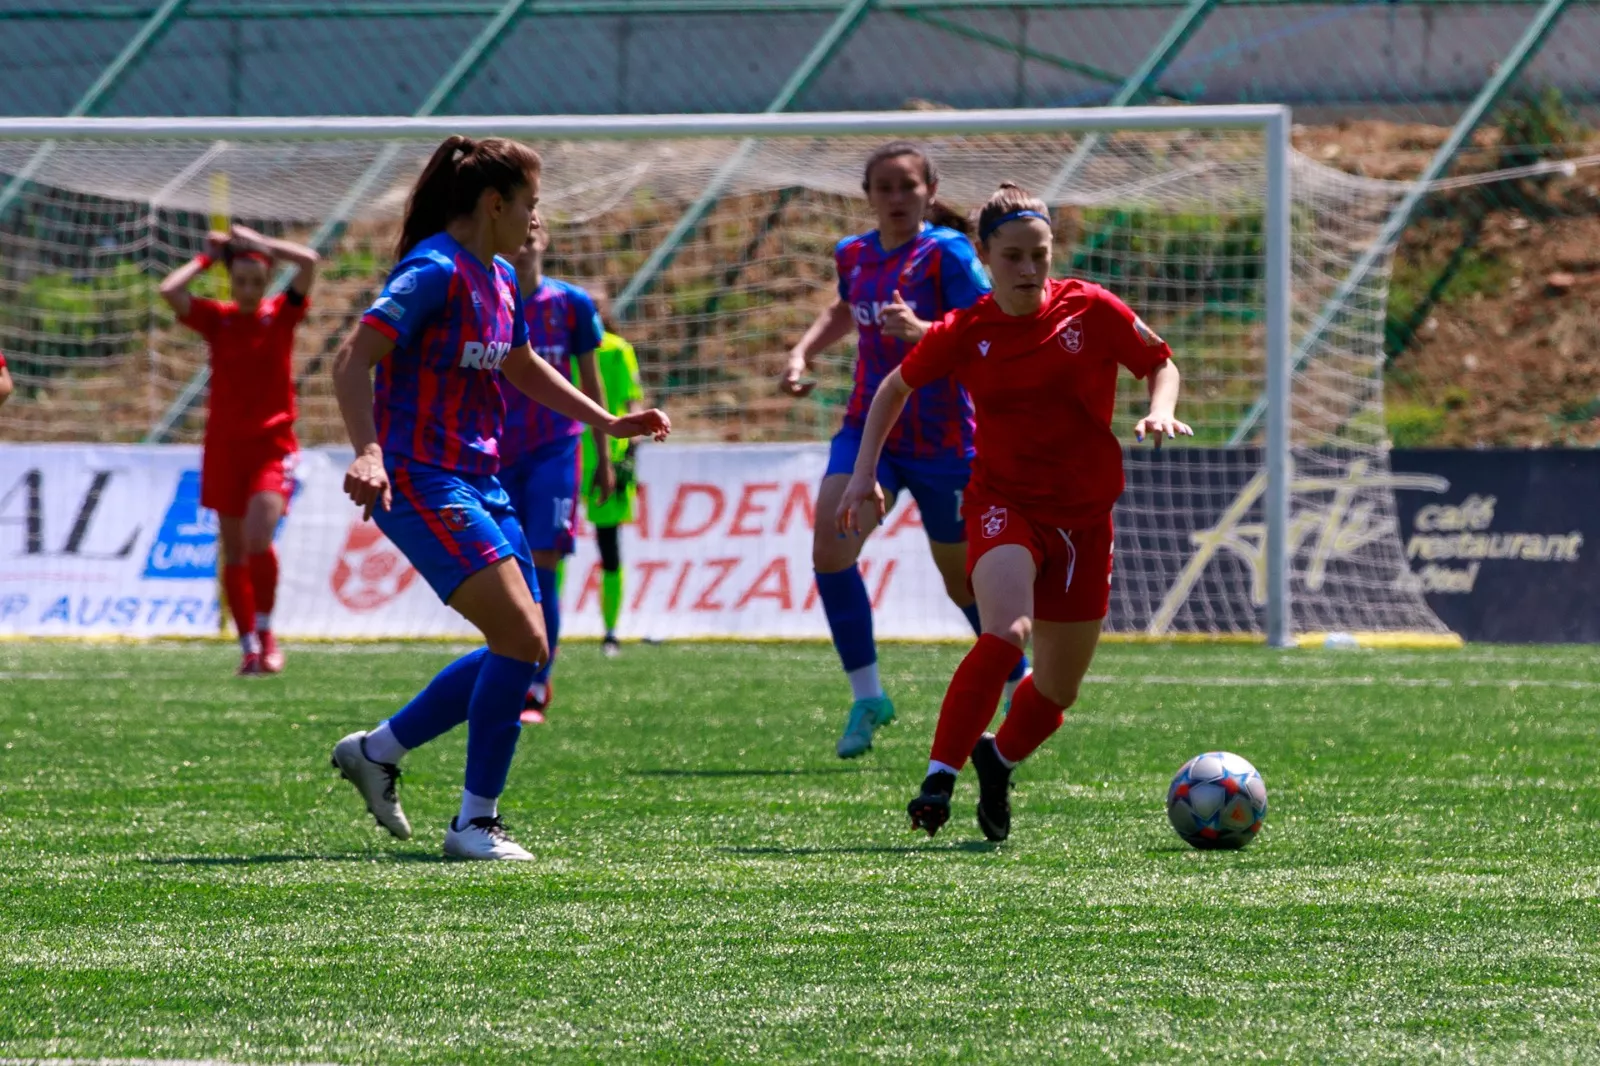 Kampionati i vajzave/ Tri javë nga fundi, Tirana e Vllaznia beteja në distancë